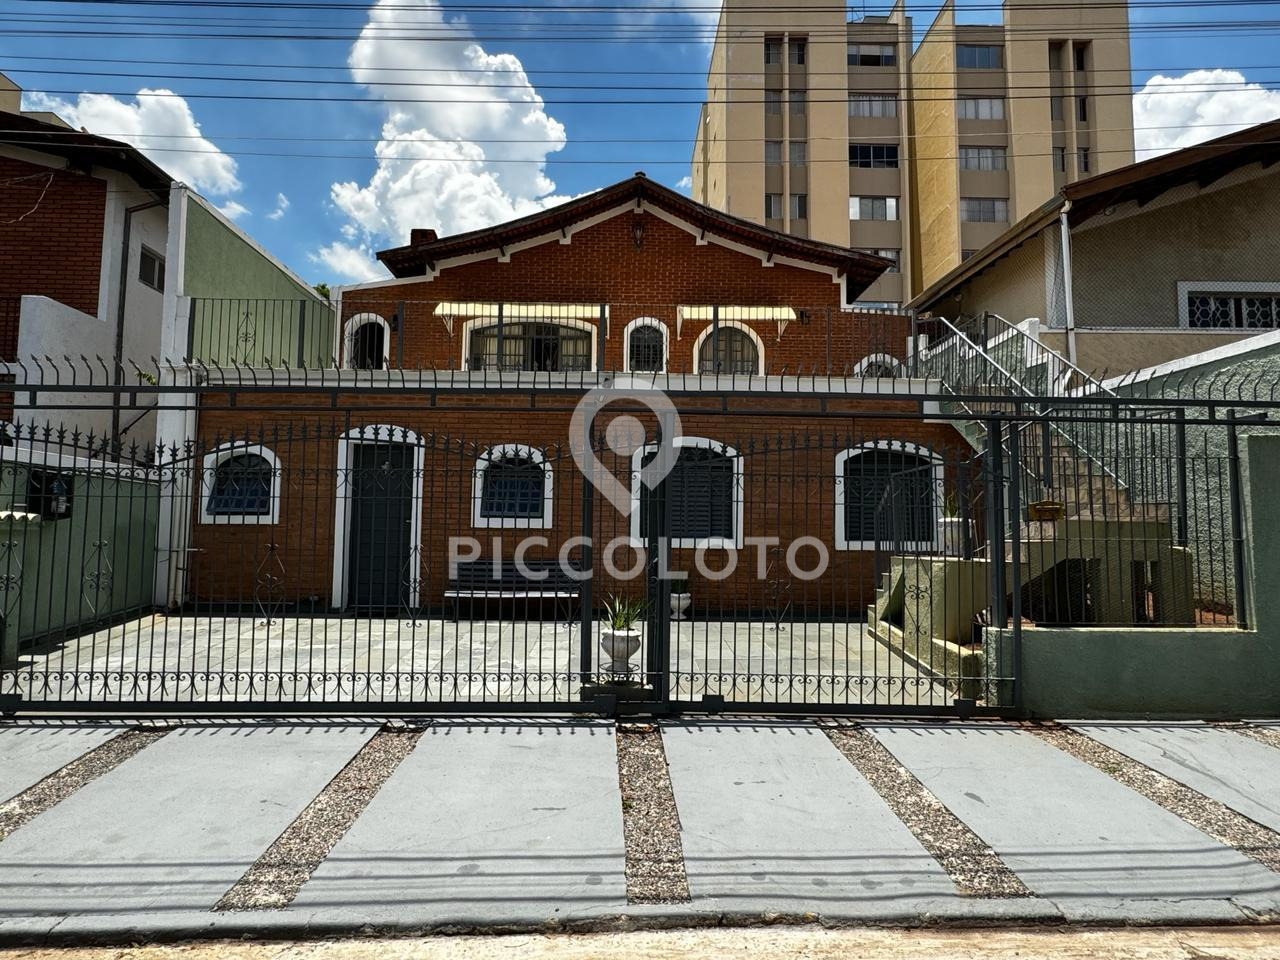 Piccoloto - Casa à venda no Chácara da Barra em Campinas